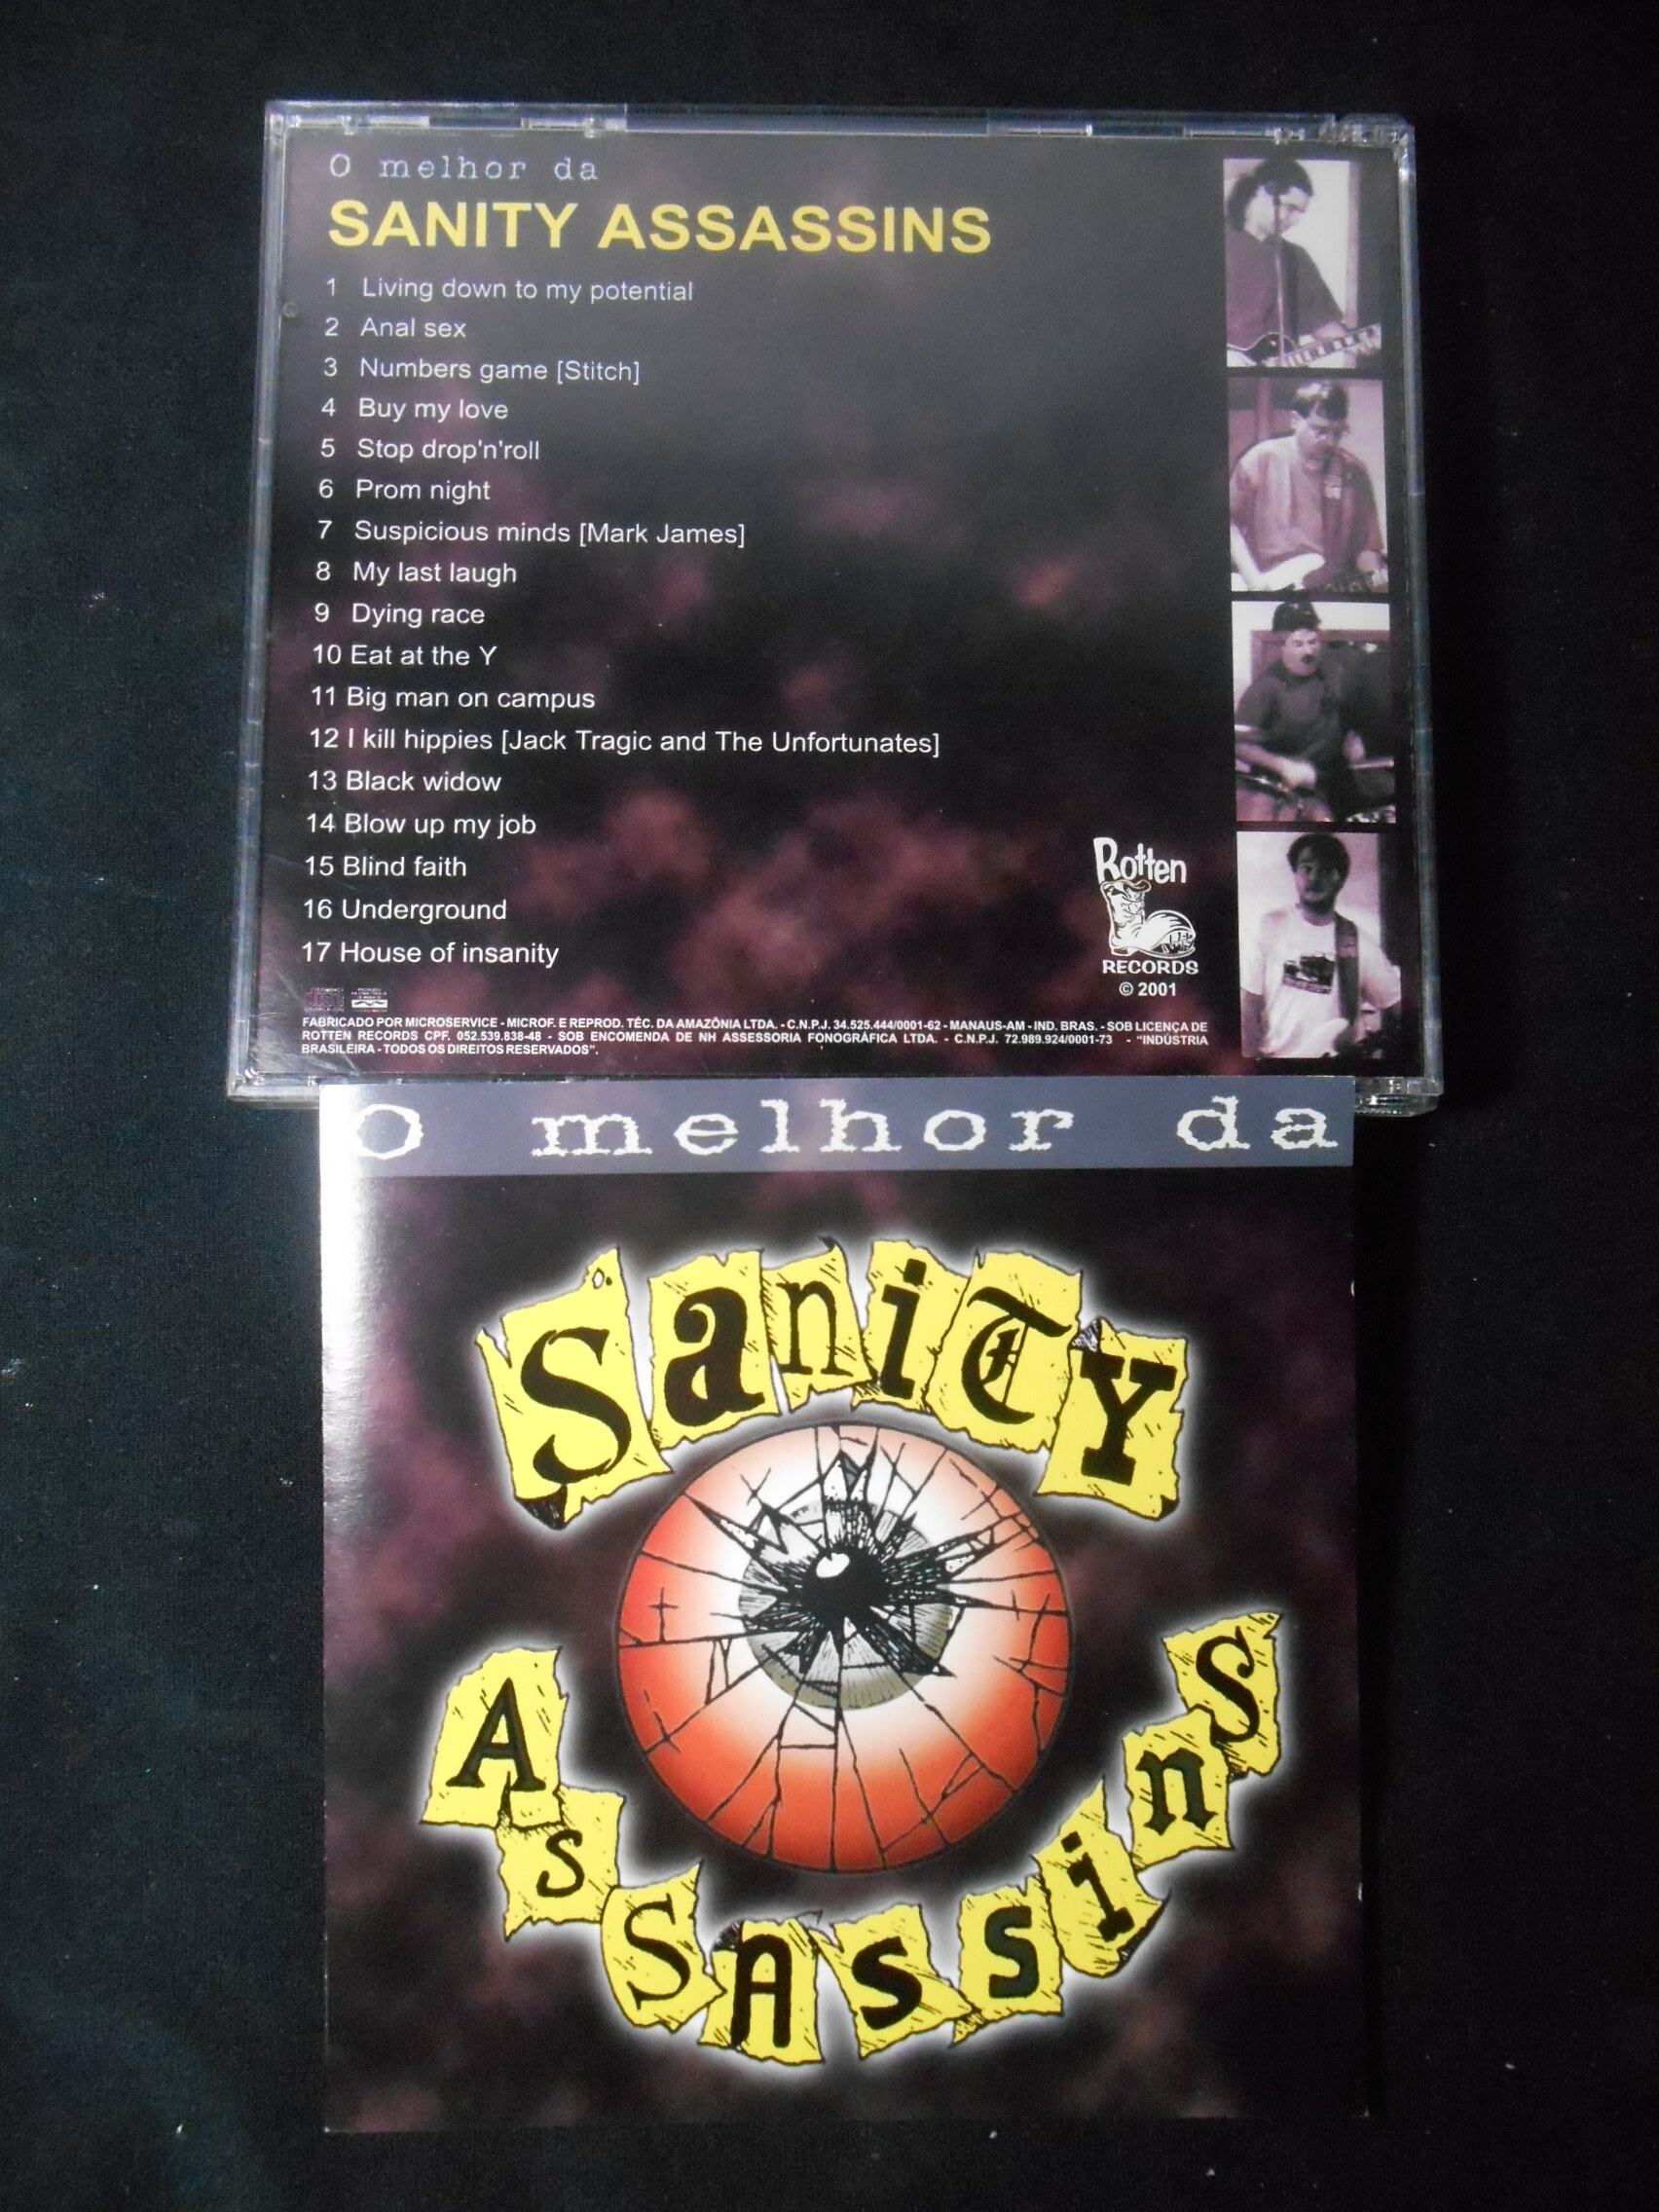 CD - Sanity Assassins - O Melhor Da